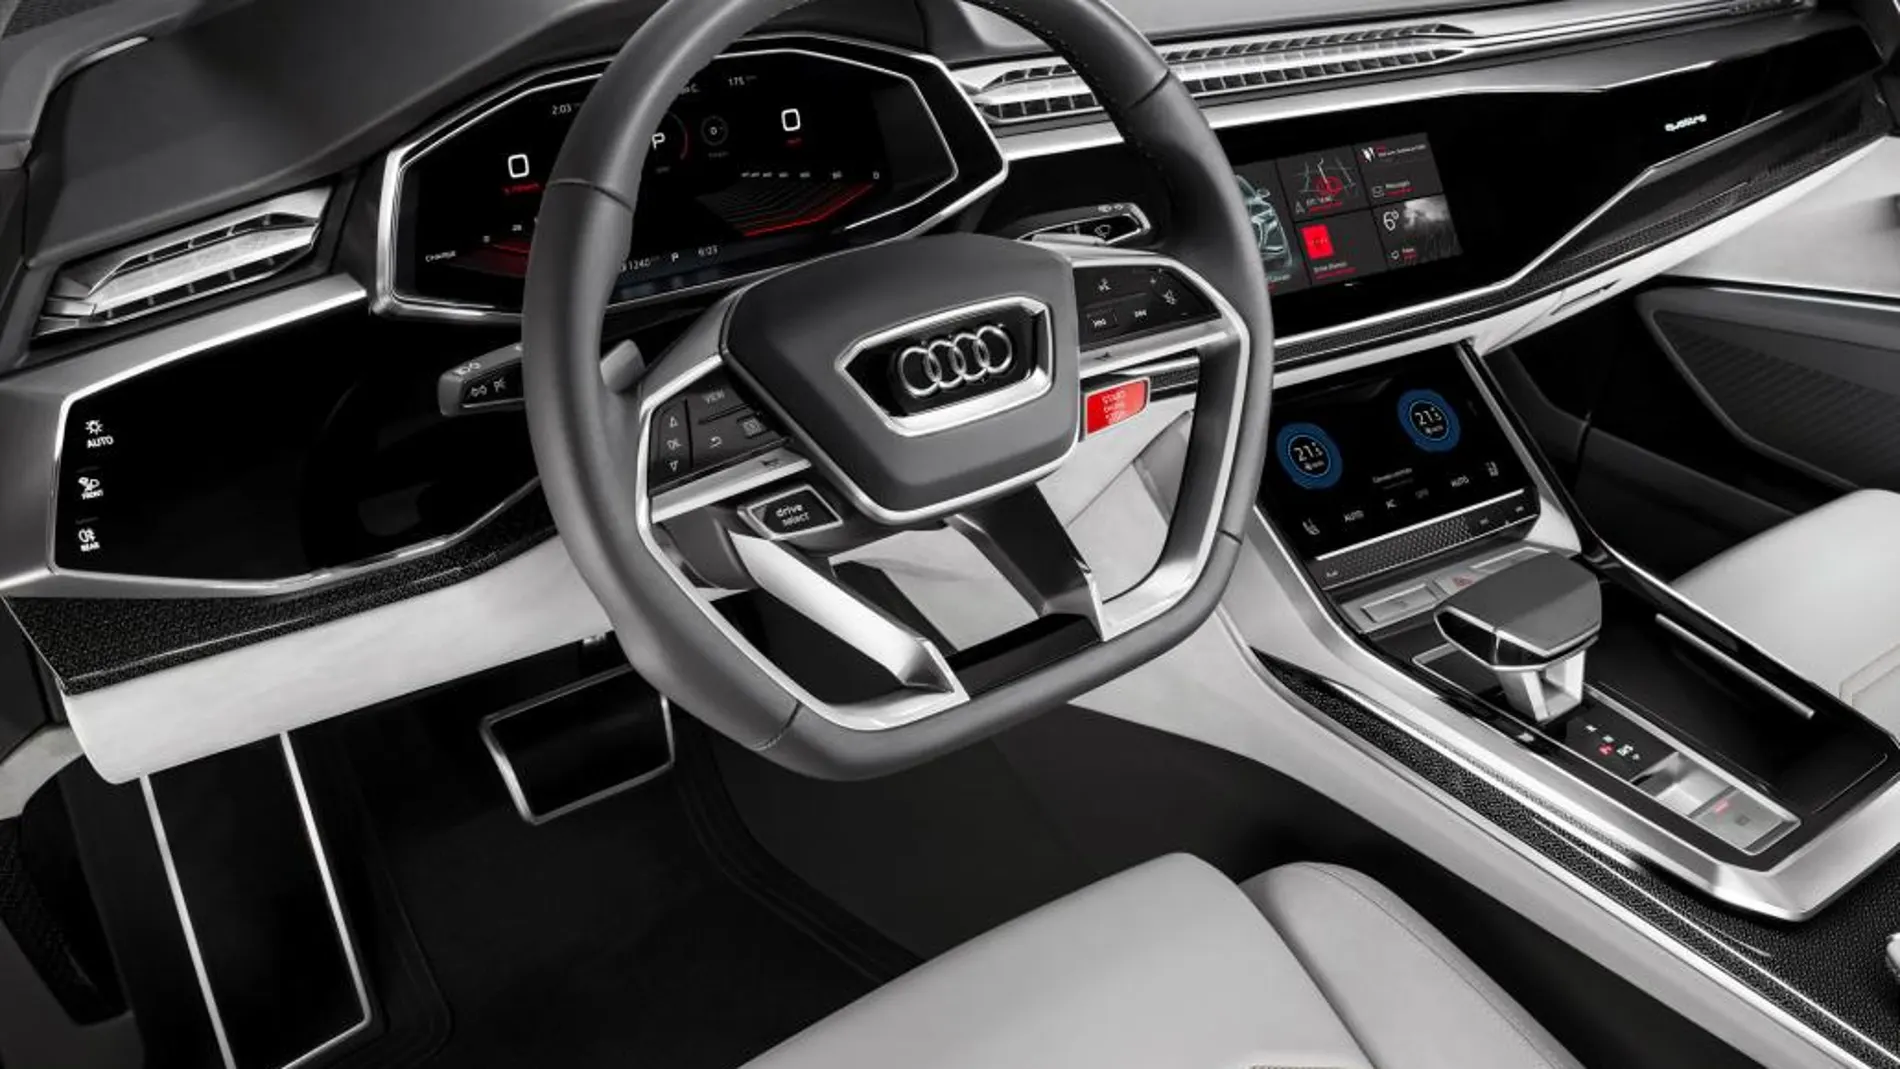 Equipa una evolución del Audi virtual cockpit.